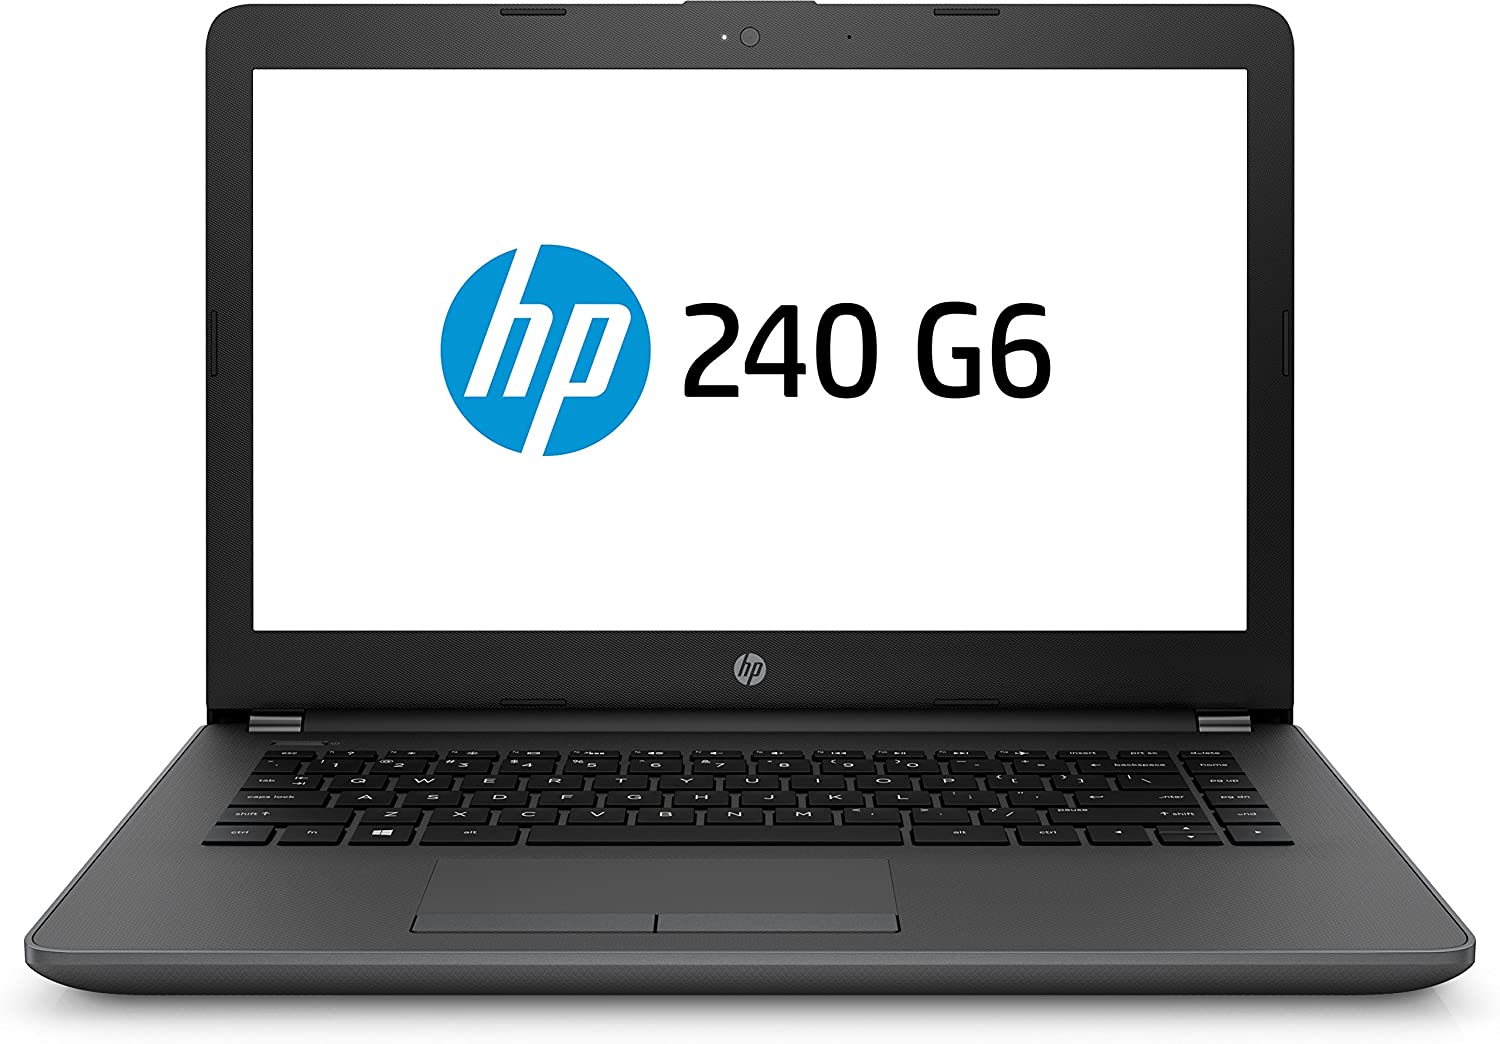 LAPTOP HP 240 G6 i3-6006U 2GHZ 4GB DDR3 1TB 14             Foto 7178347-1.jpg